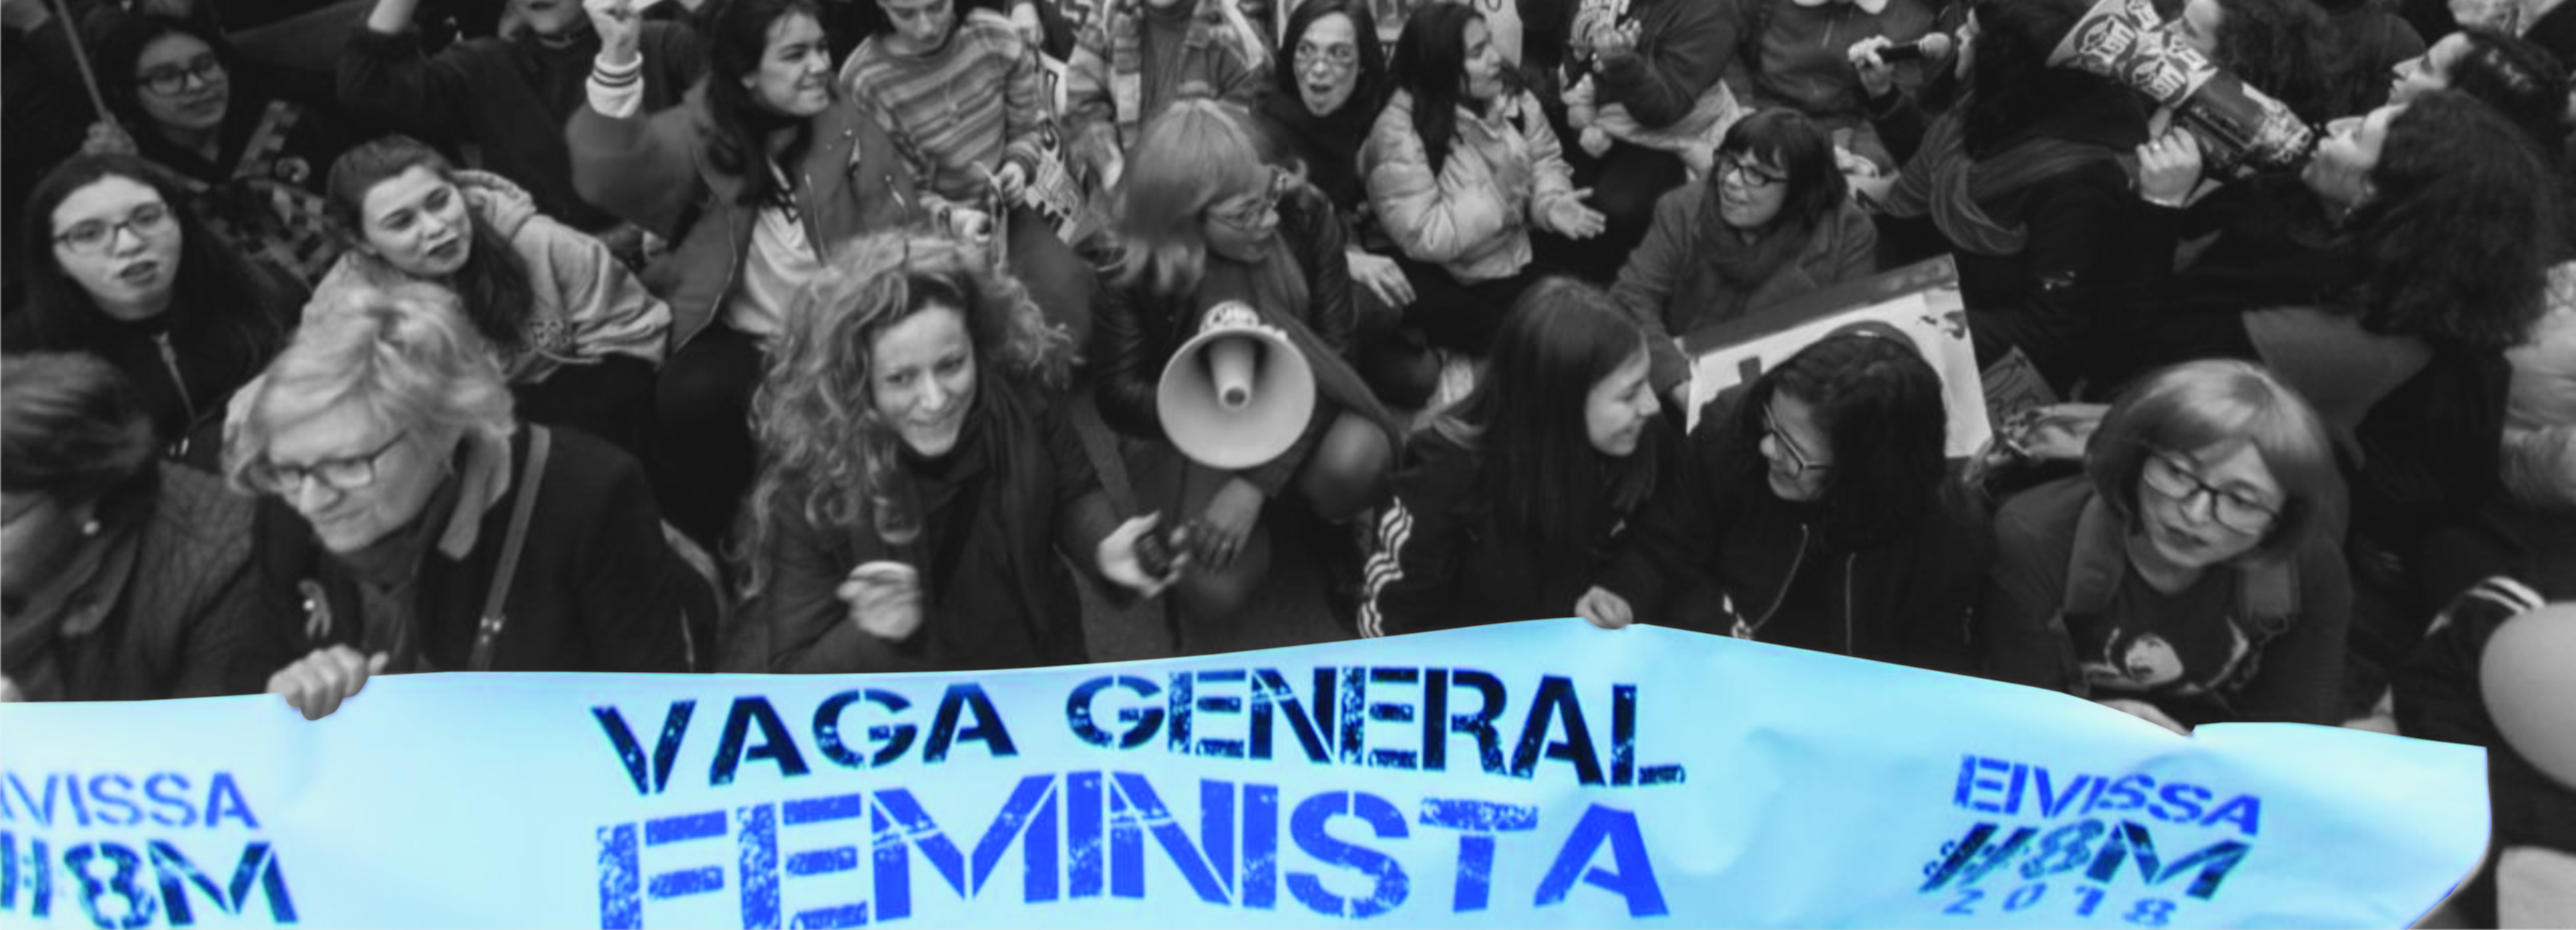 Este viernes 8 de marzo España vivirá por segundo año consecutivo una convocatoria sindical de huelga general por la igualdad de derechos de las mujeres. 